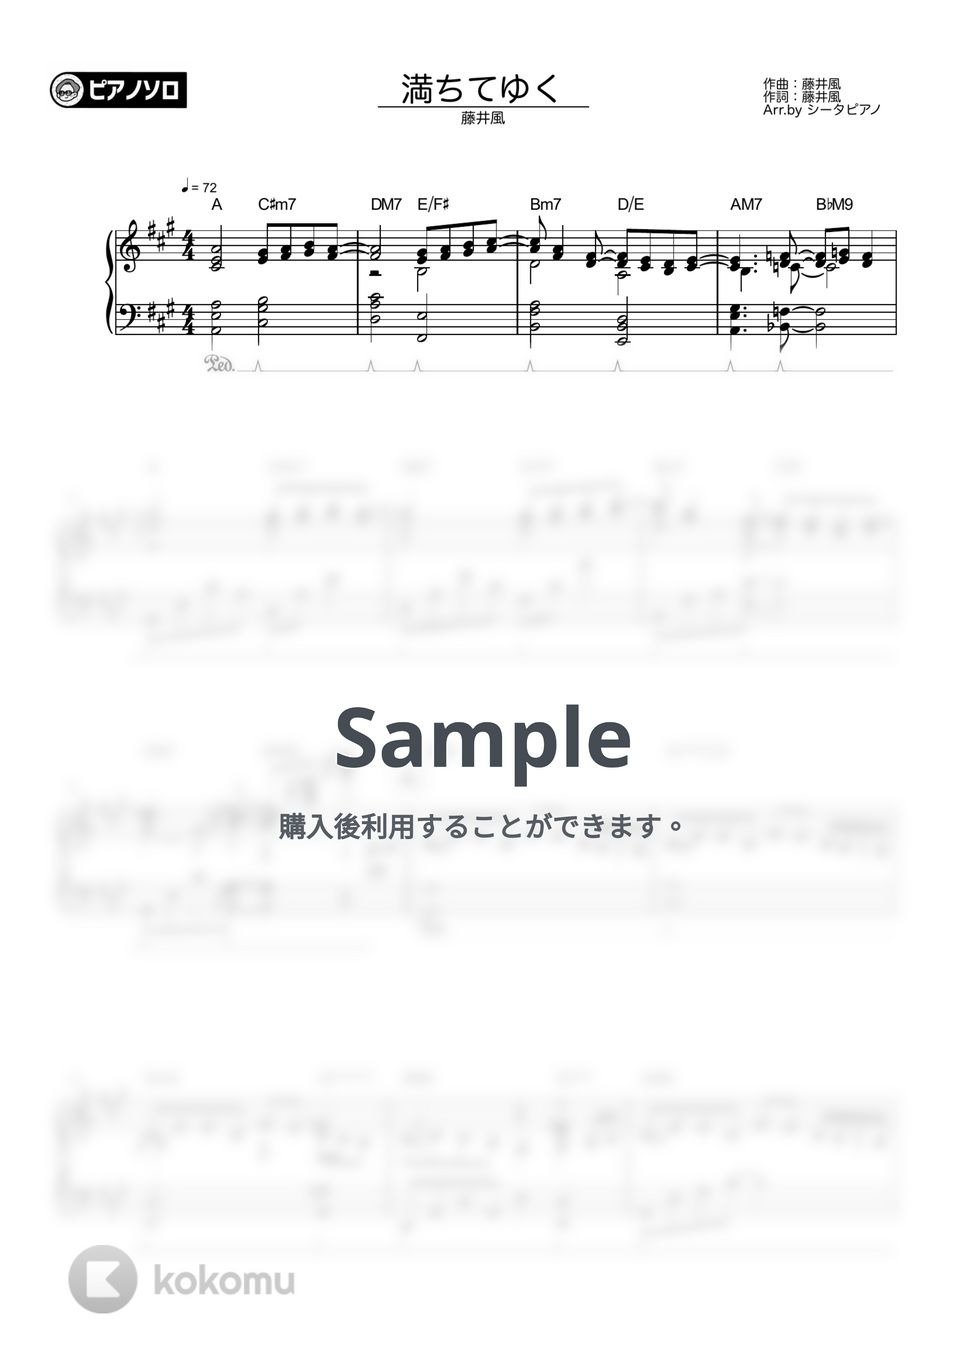 藤井風 - 満ちてゆく by シータピアノ